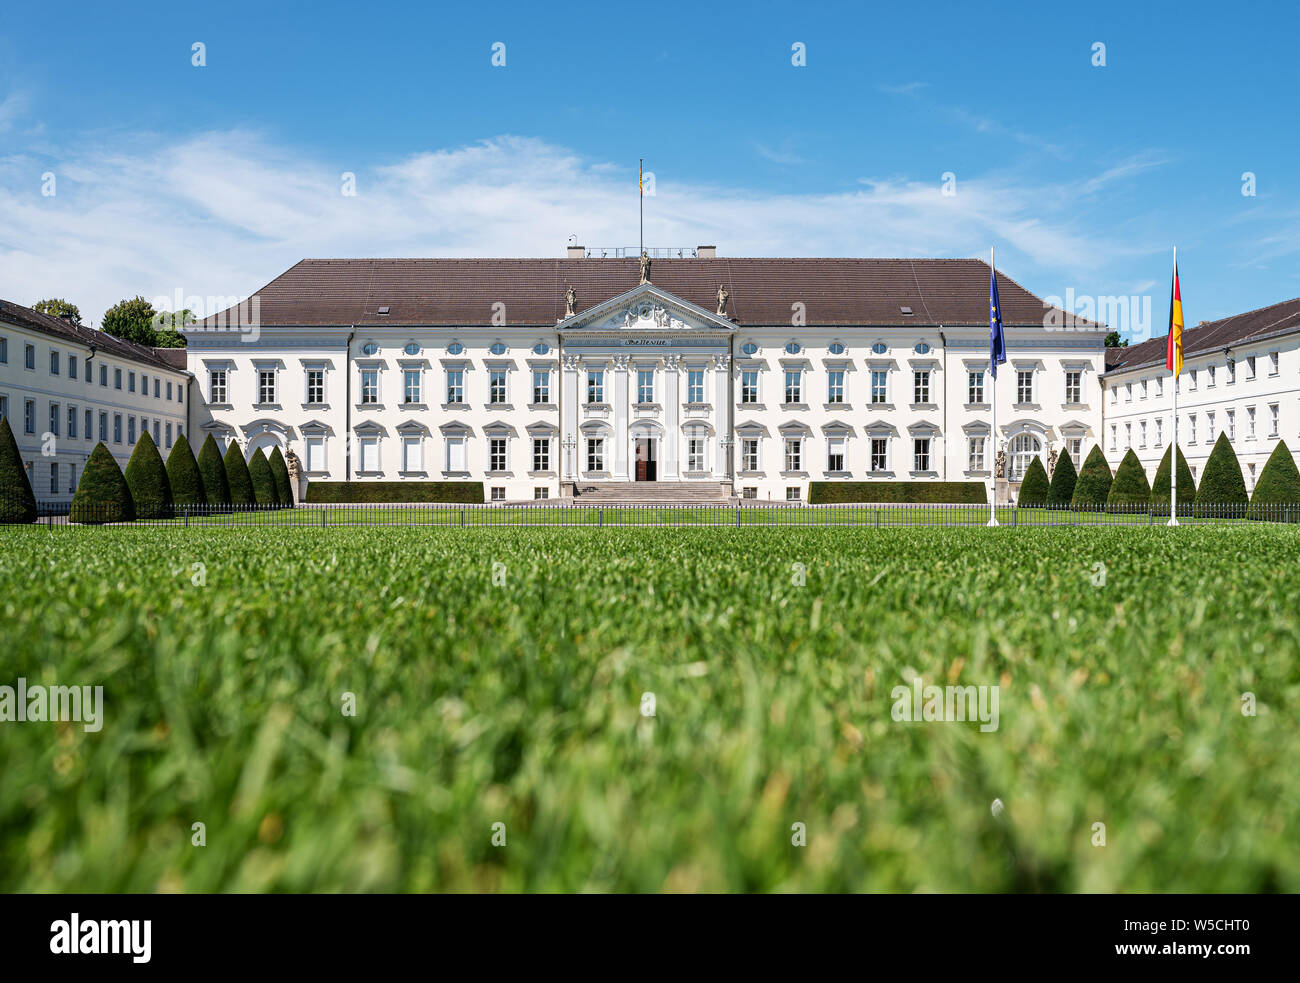 2019-07-24 Berlín, Alemania: Bellevue Palace, el palacio Schloss Bellevue, en el distrito de Tiergarten, residencia del Presidente de la República Federal de Alemania. Foto de stock